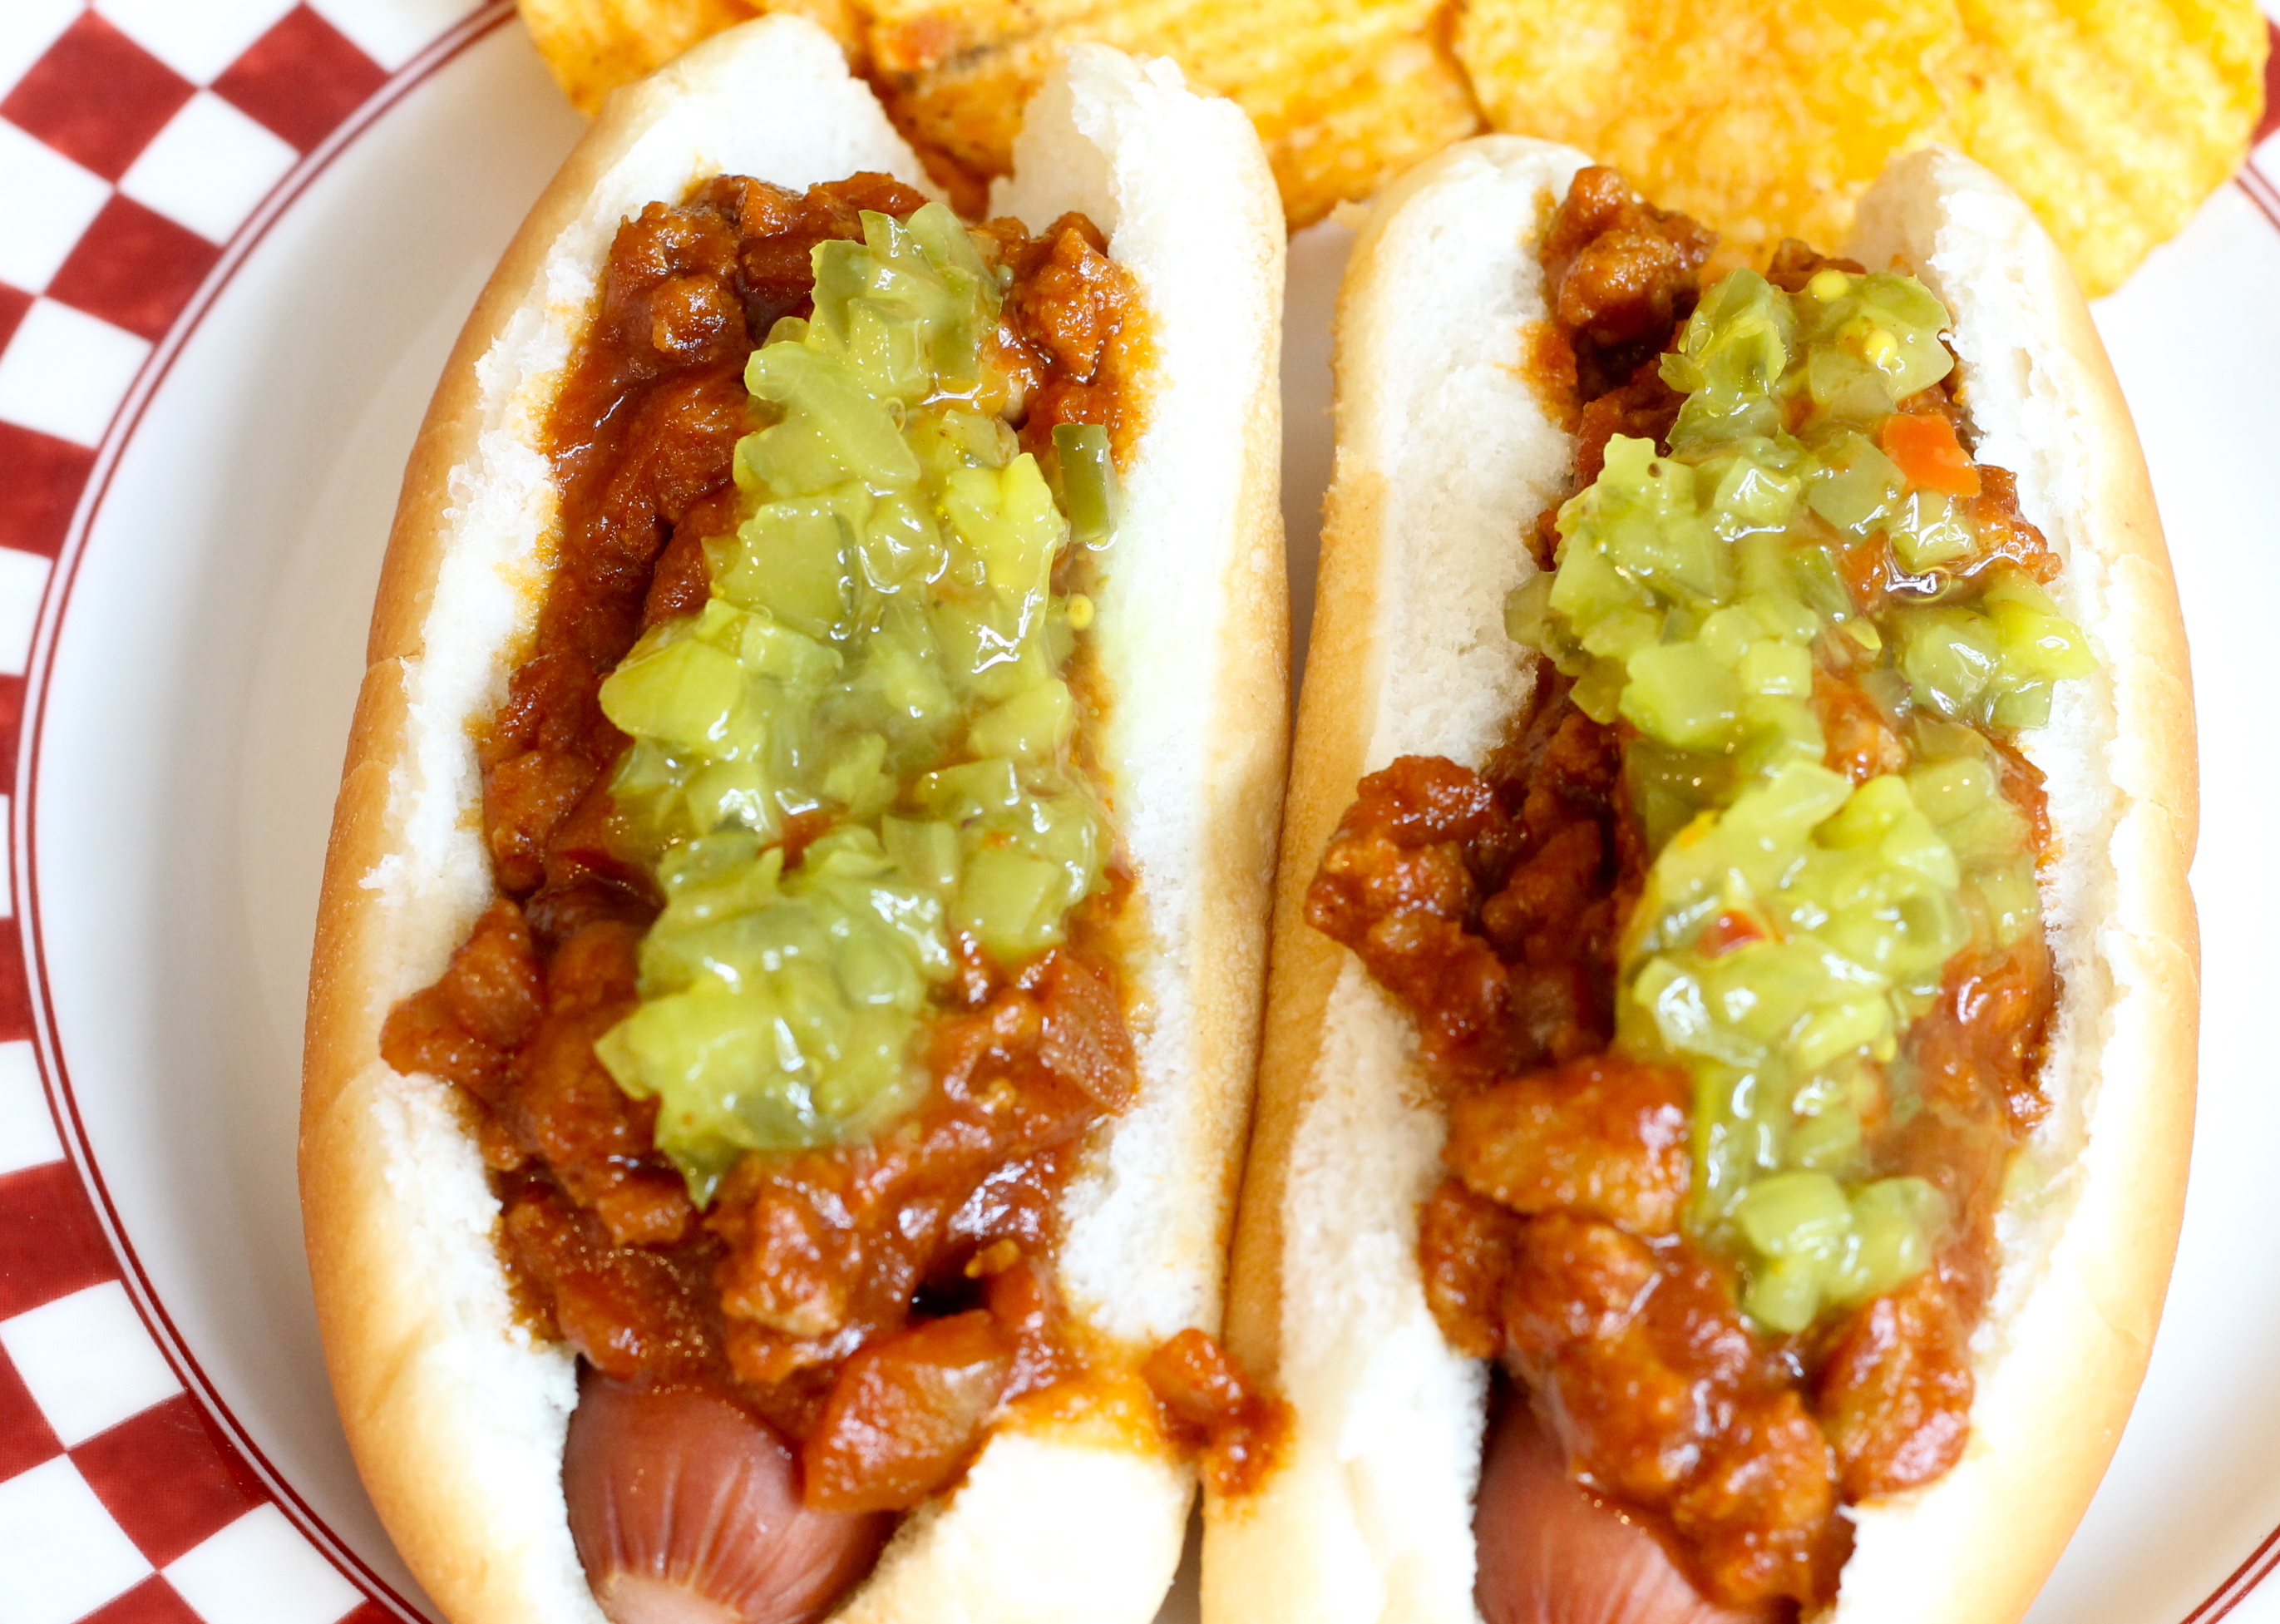 IMG 0832 - Grandma's Hot Dog Sauce Recipe